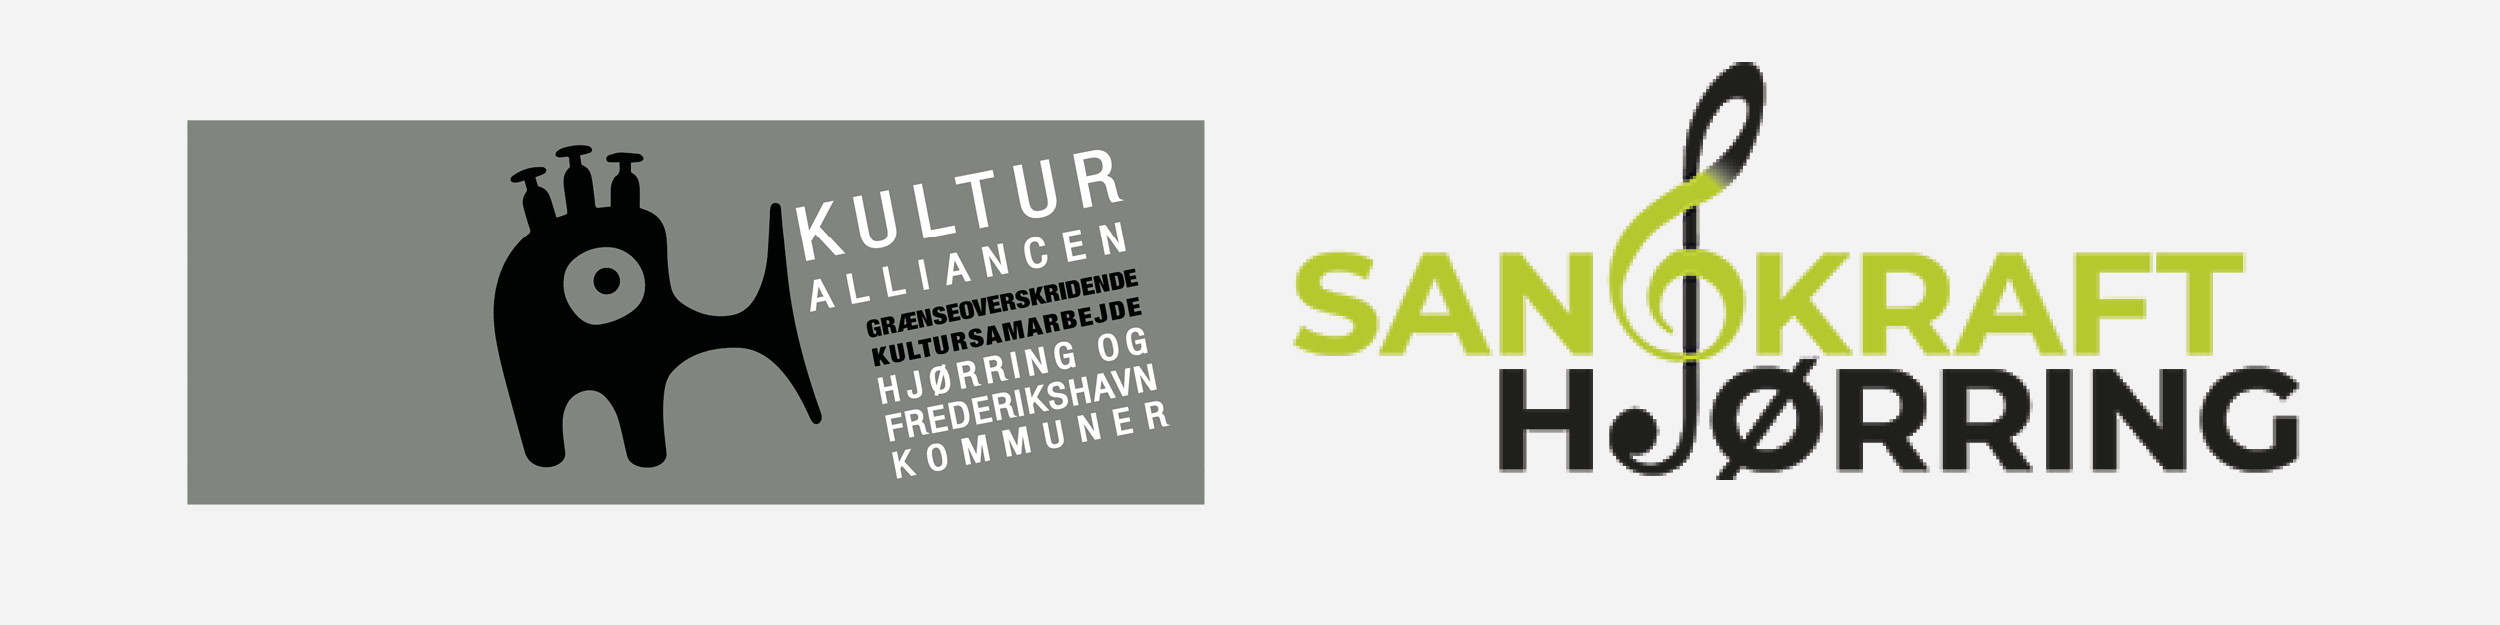 Kulturalliance og Sangkraft Hjørring logoer